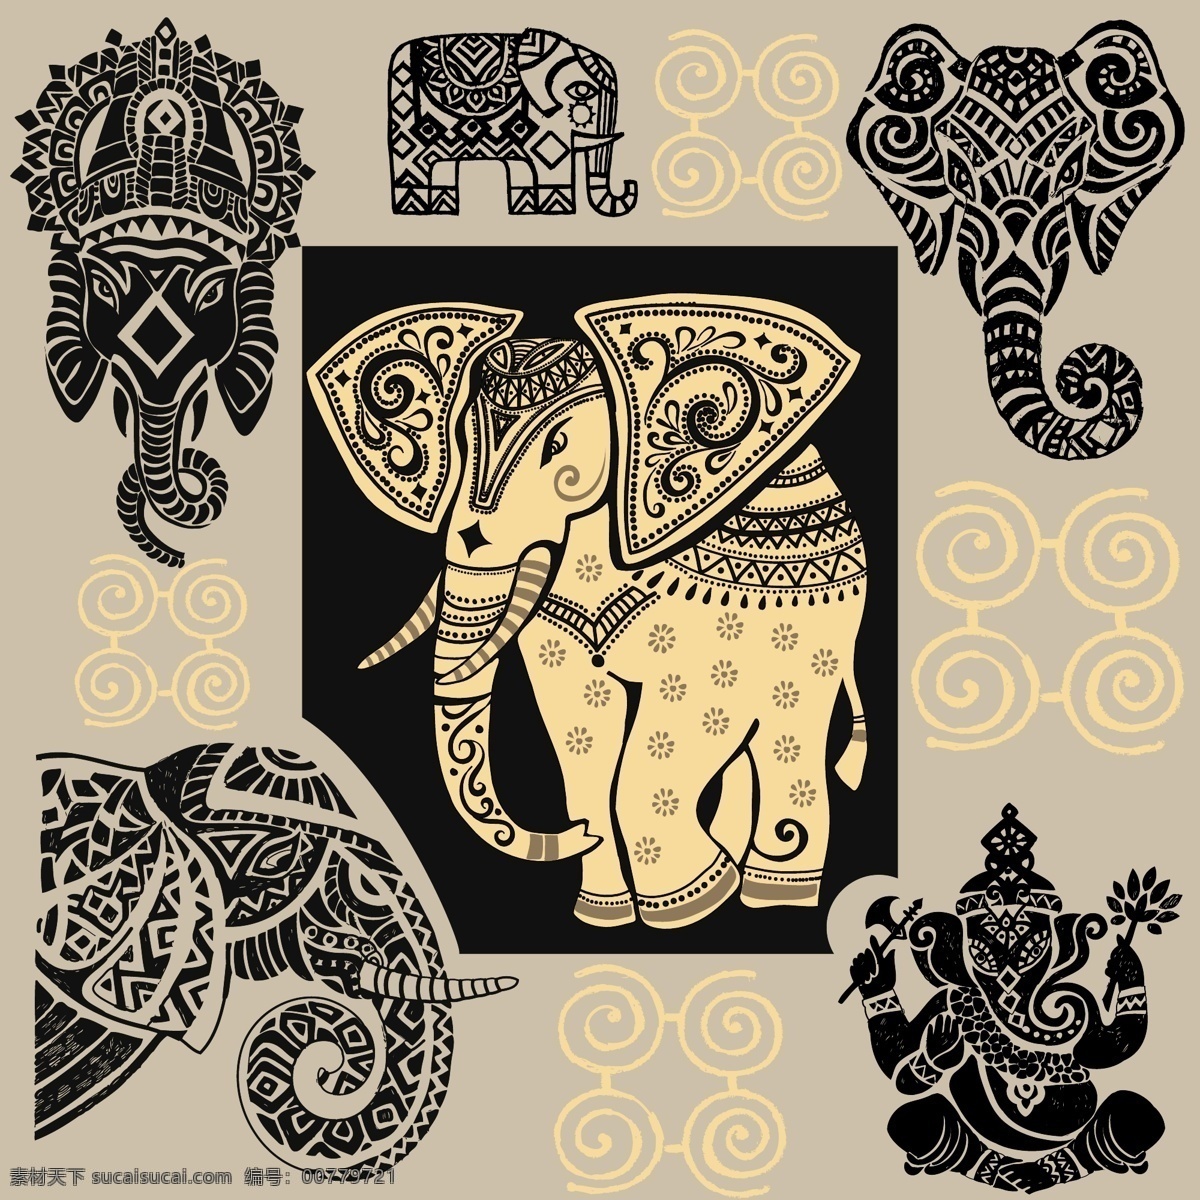 古代 图腾 纹样 矢量 装饰 大象 金色 几何图案 背景素材 创意设计 大耳朵 贺卡背景